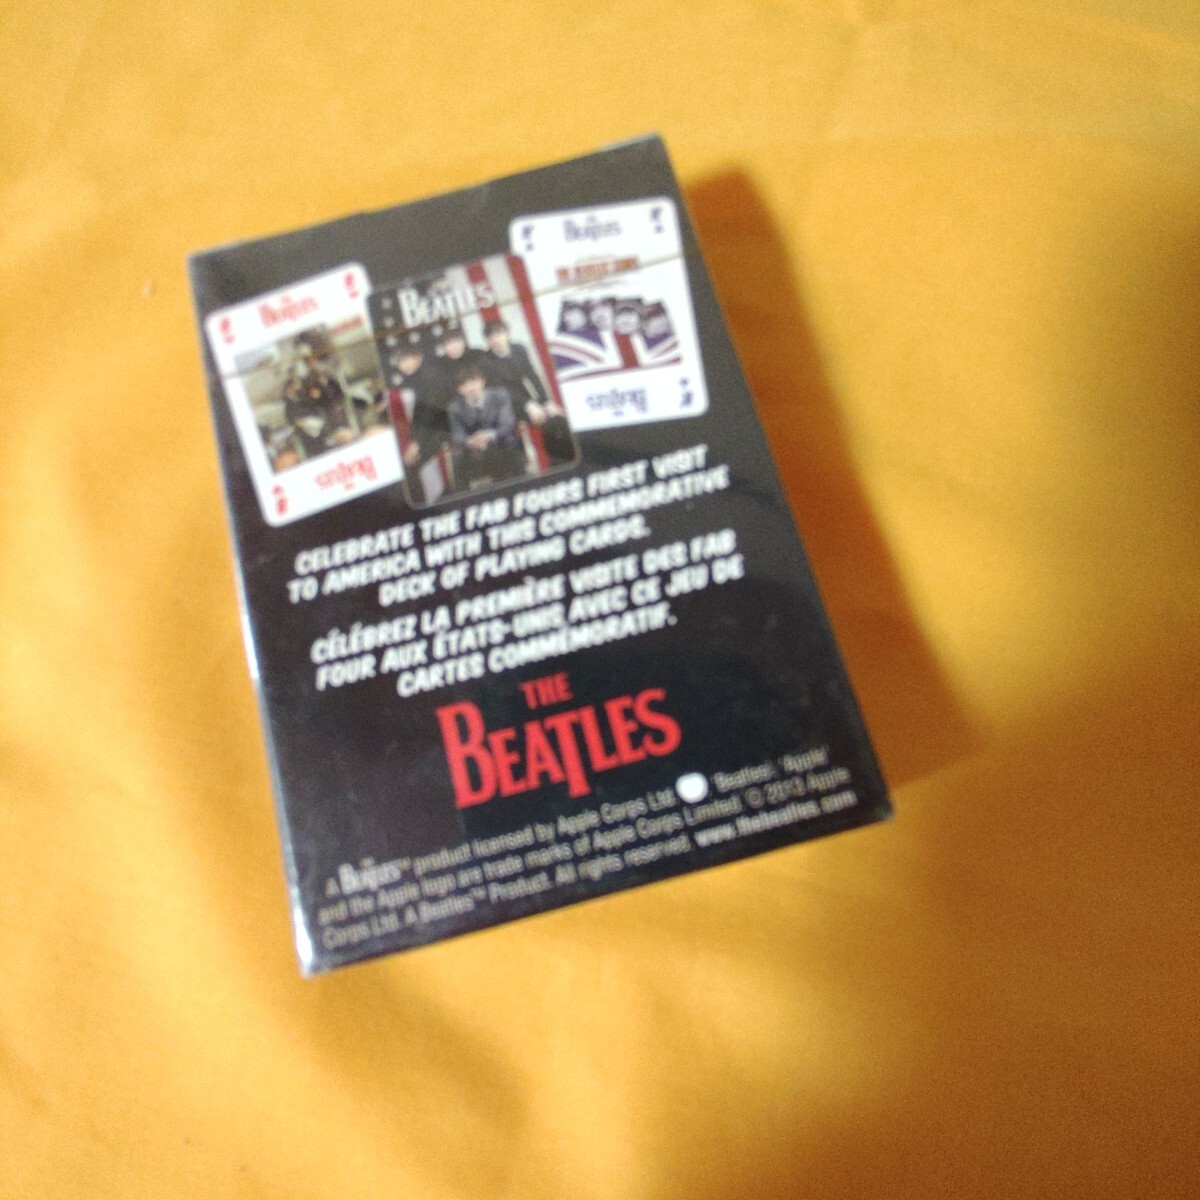  новый товар не использовался стандартный товар официальный The * Beatles товары The Beatles брелок для ключа жестяная банка bachi жестяная банка значок карты совместно продажа комплектом 